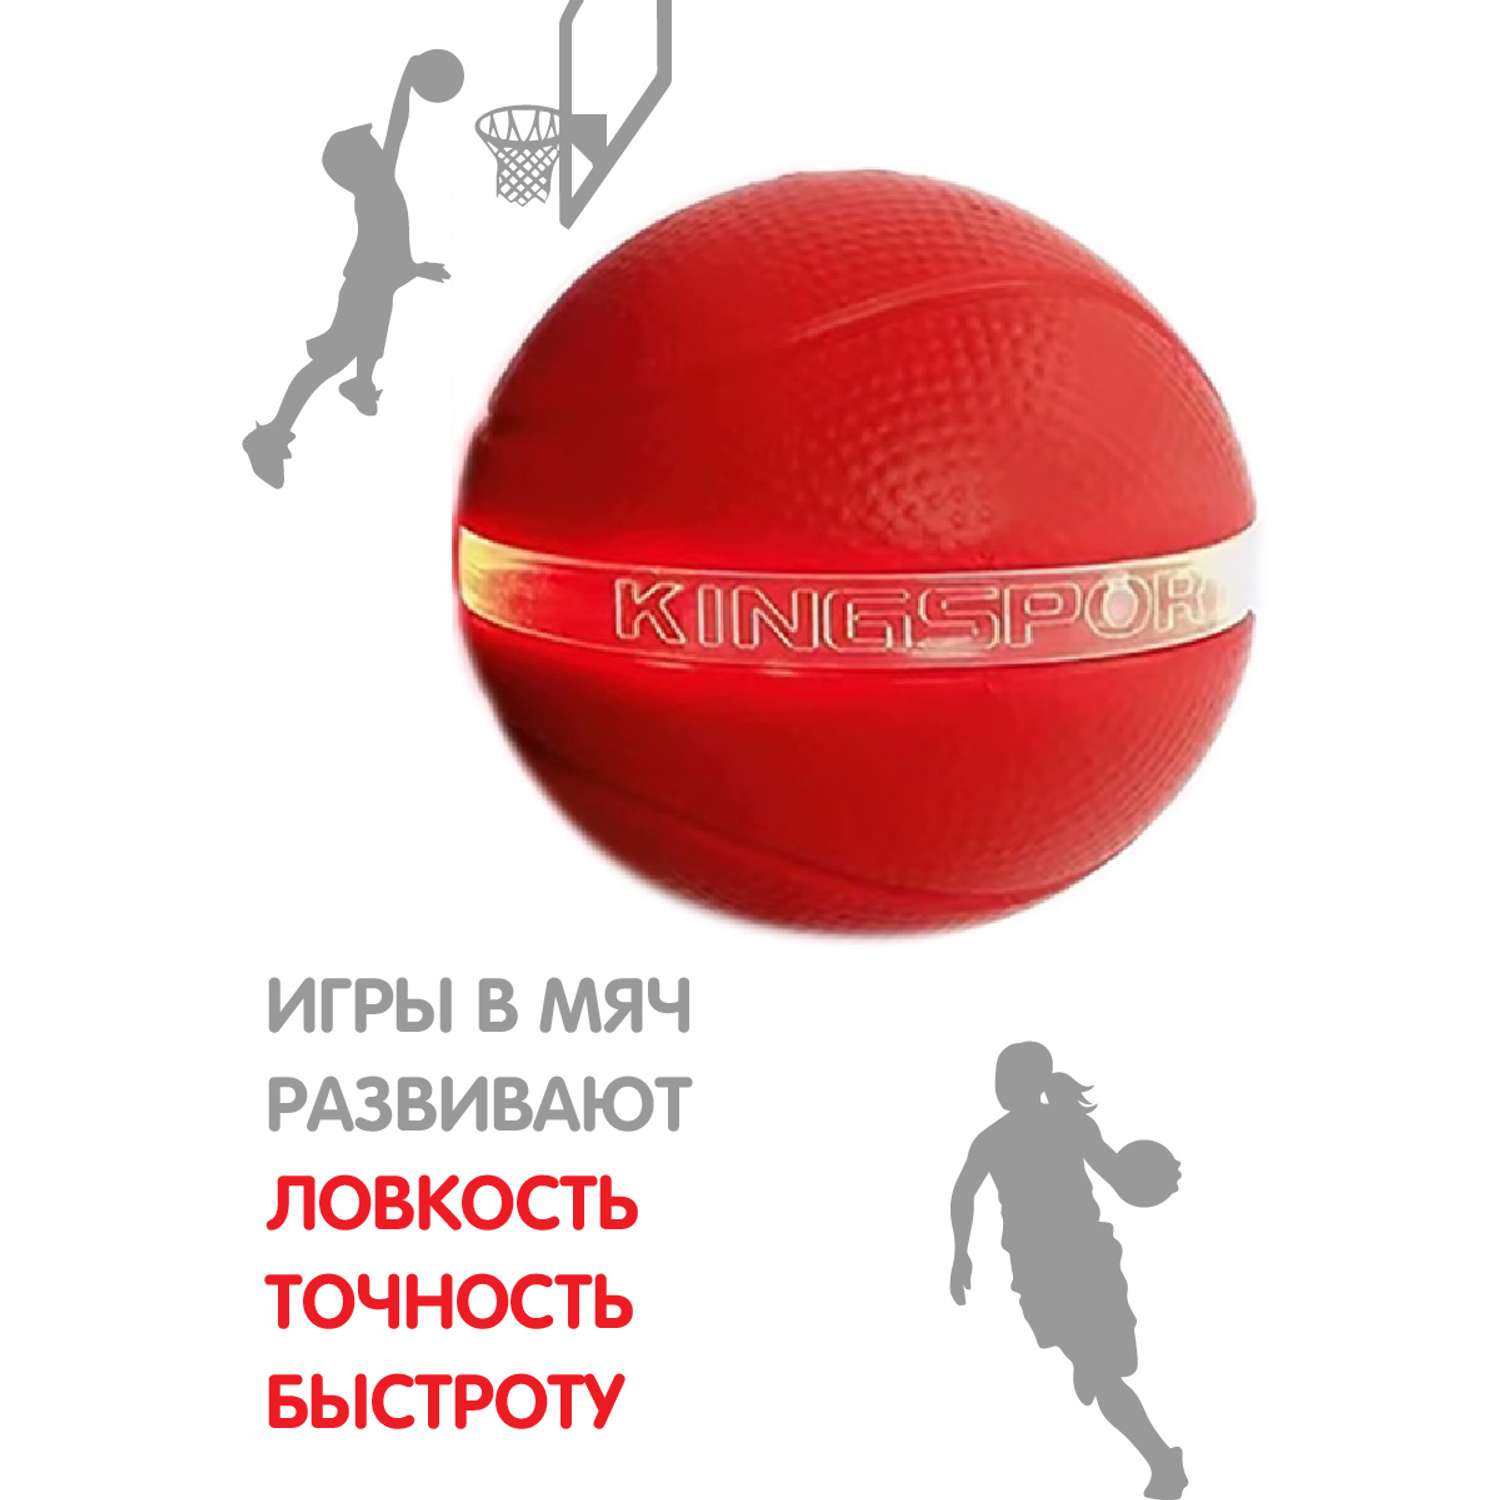 Мяч Veld Co Баскетбольный со световыми и звуковыми эффектами - фото 2